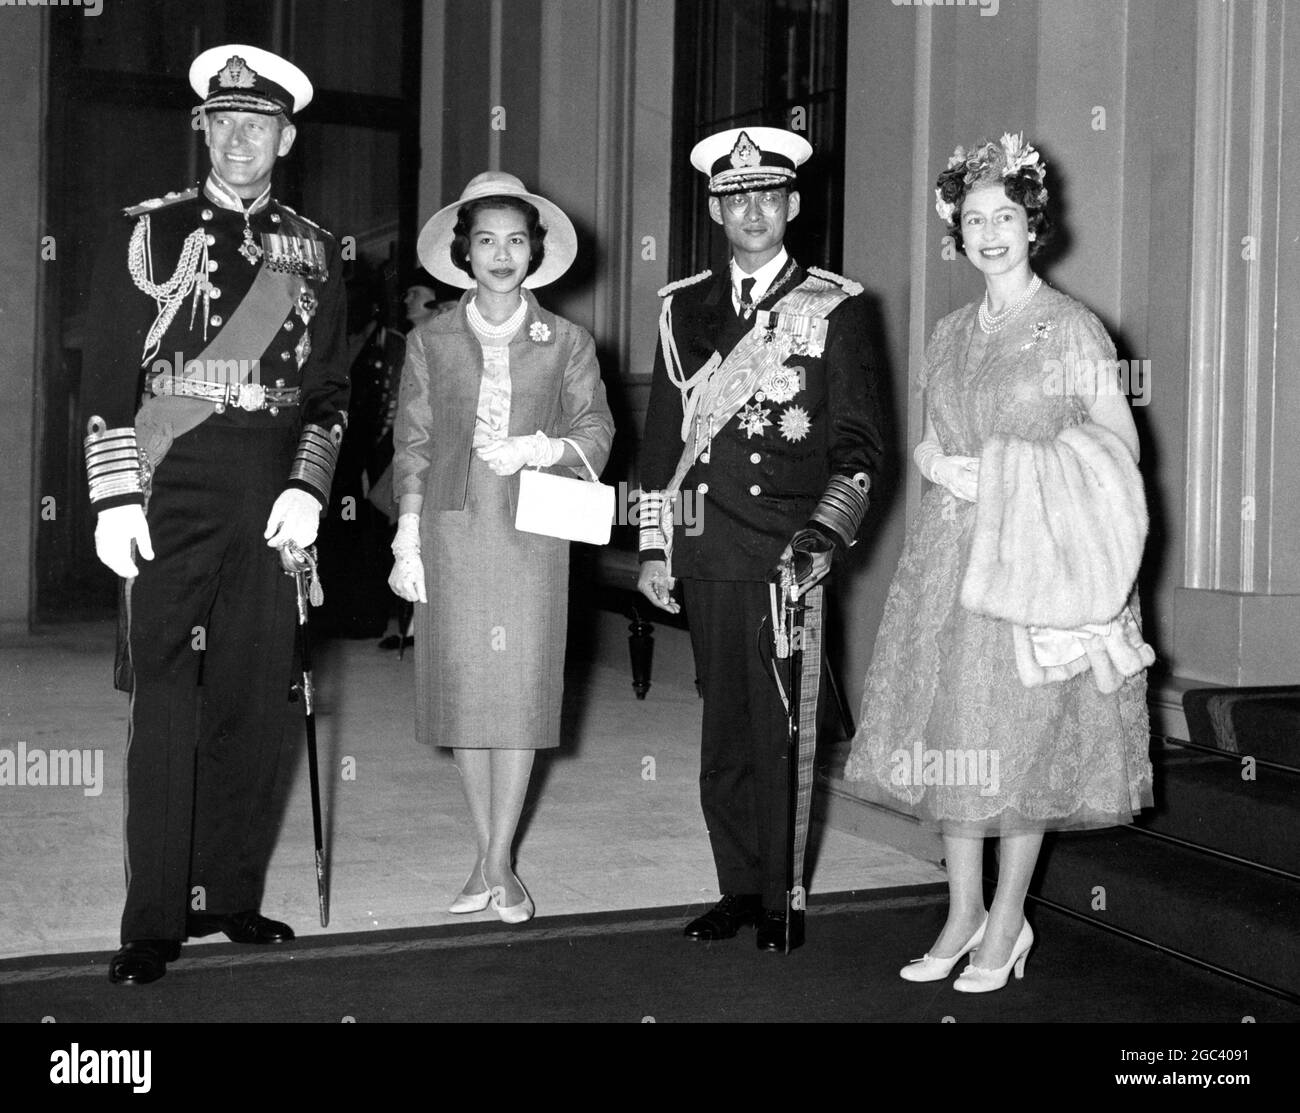 Le roi et la reine de Thaïlande arrivent pour la visite de l'État de gauche à droite : le duc d'Édimbourg, la reine Sirikit de Thaïlande et le roi Bhumibol de Thaïlande et la reine Elizabeth II photographiés au Palais Buckkinhgam après leur trajet de procession depuis la gare Victoria le 19 juillet 1960 Banque D'Images